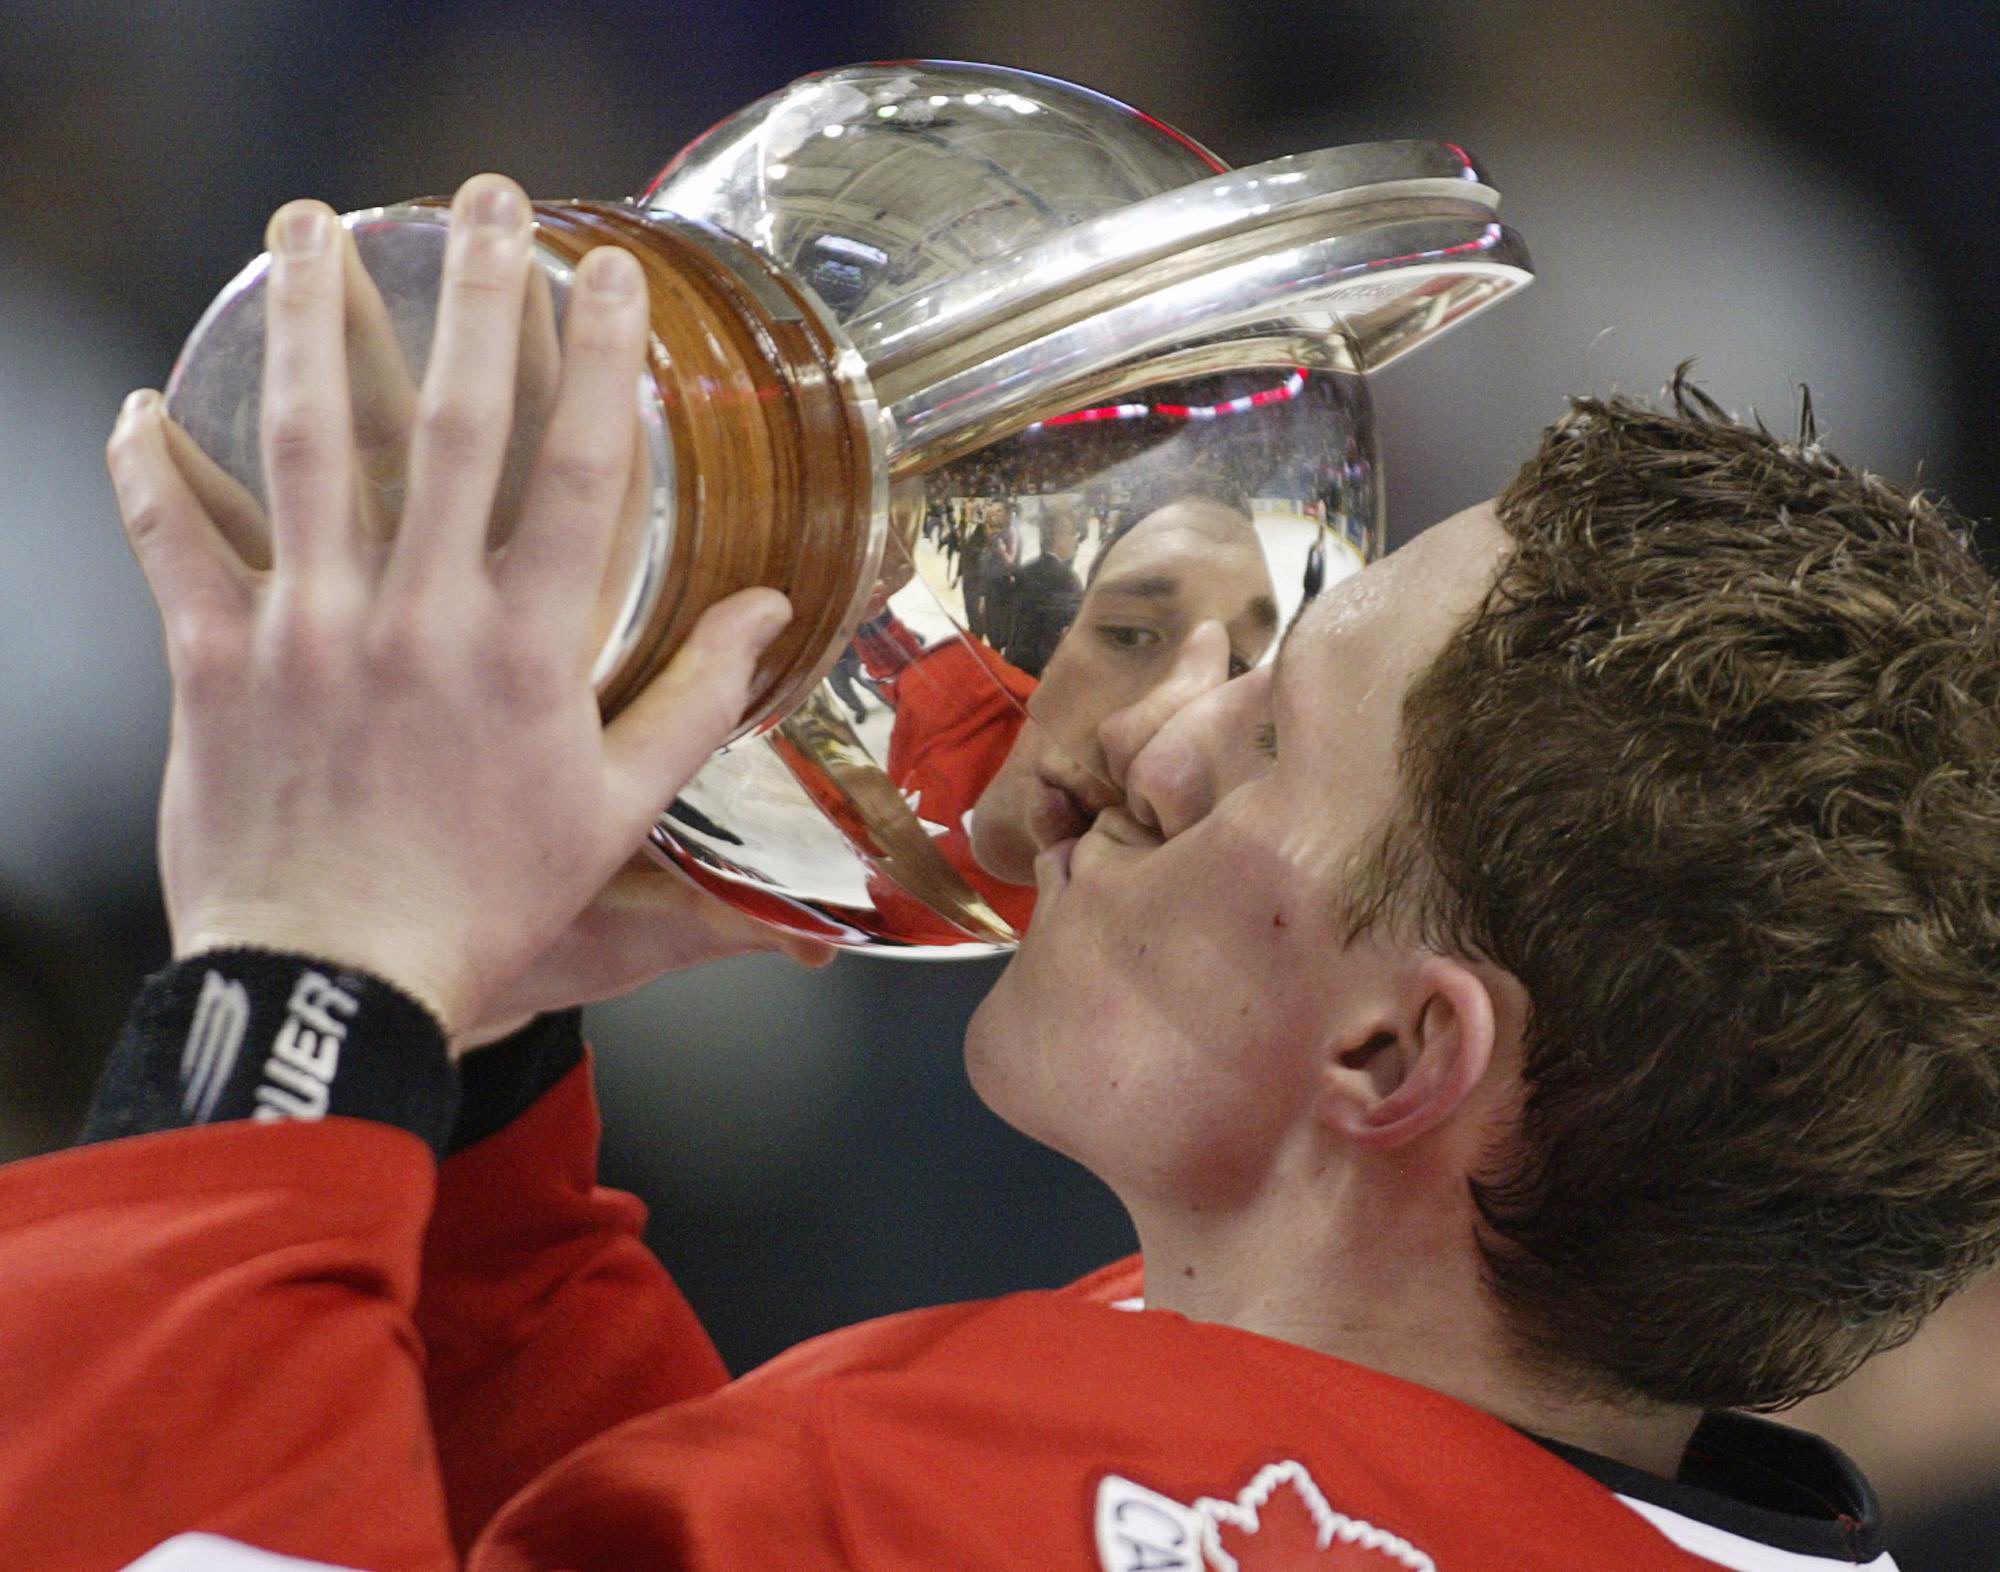 Un joueur de hockey embrasse un trophée.